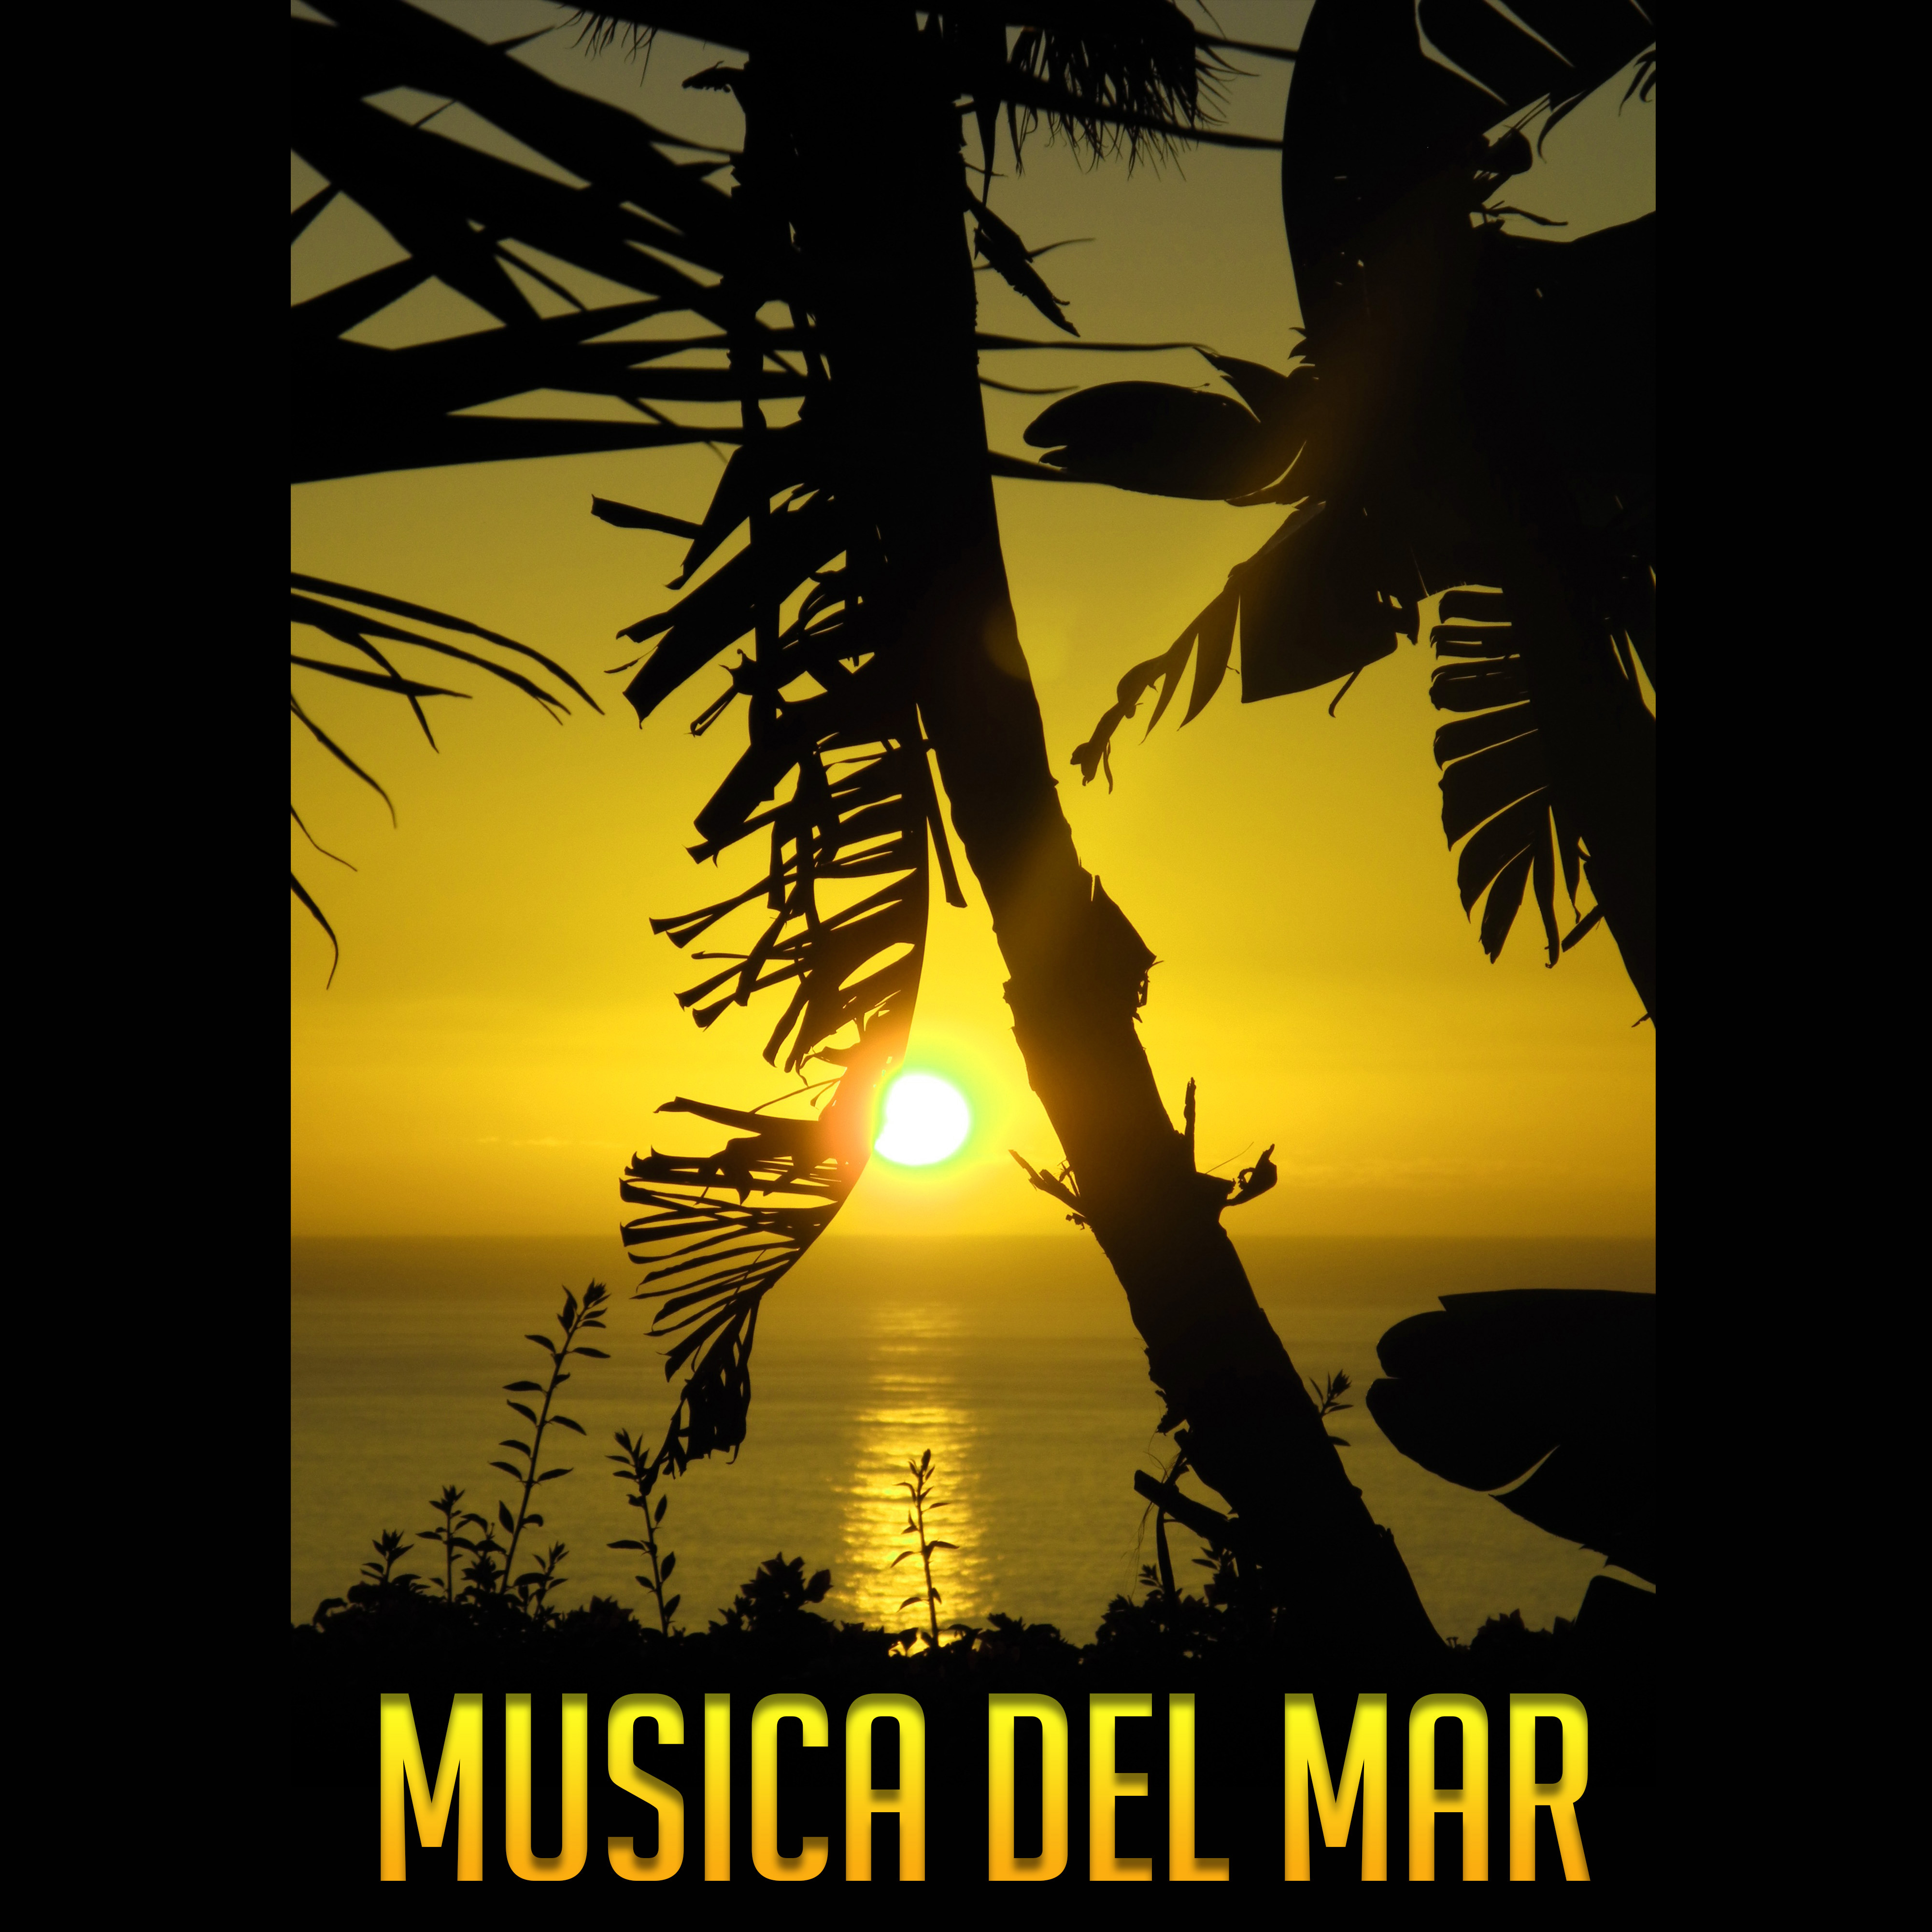 Musica Del Mar Verano Mu sica Lounge de Chillout, Musica de Ambiente, Rethymnon Chillout